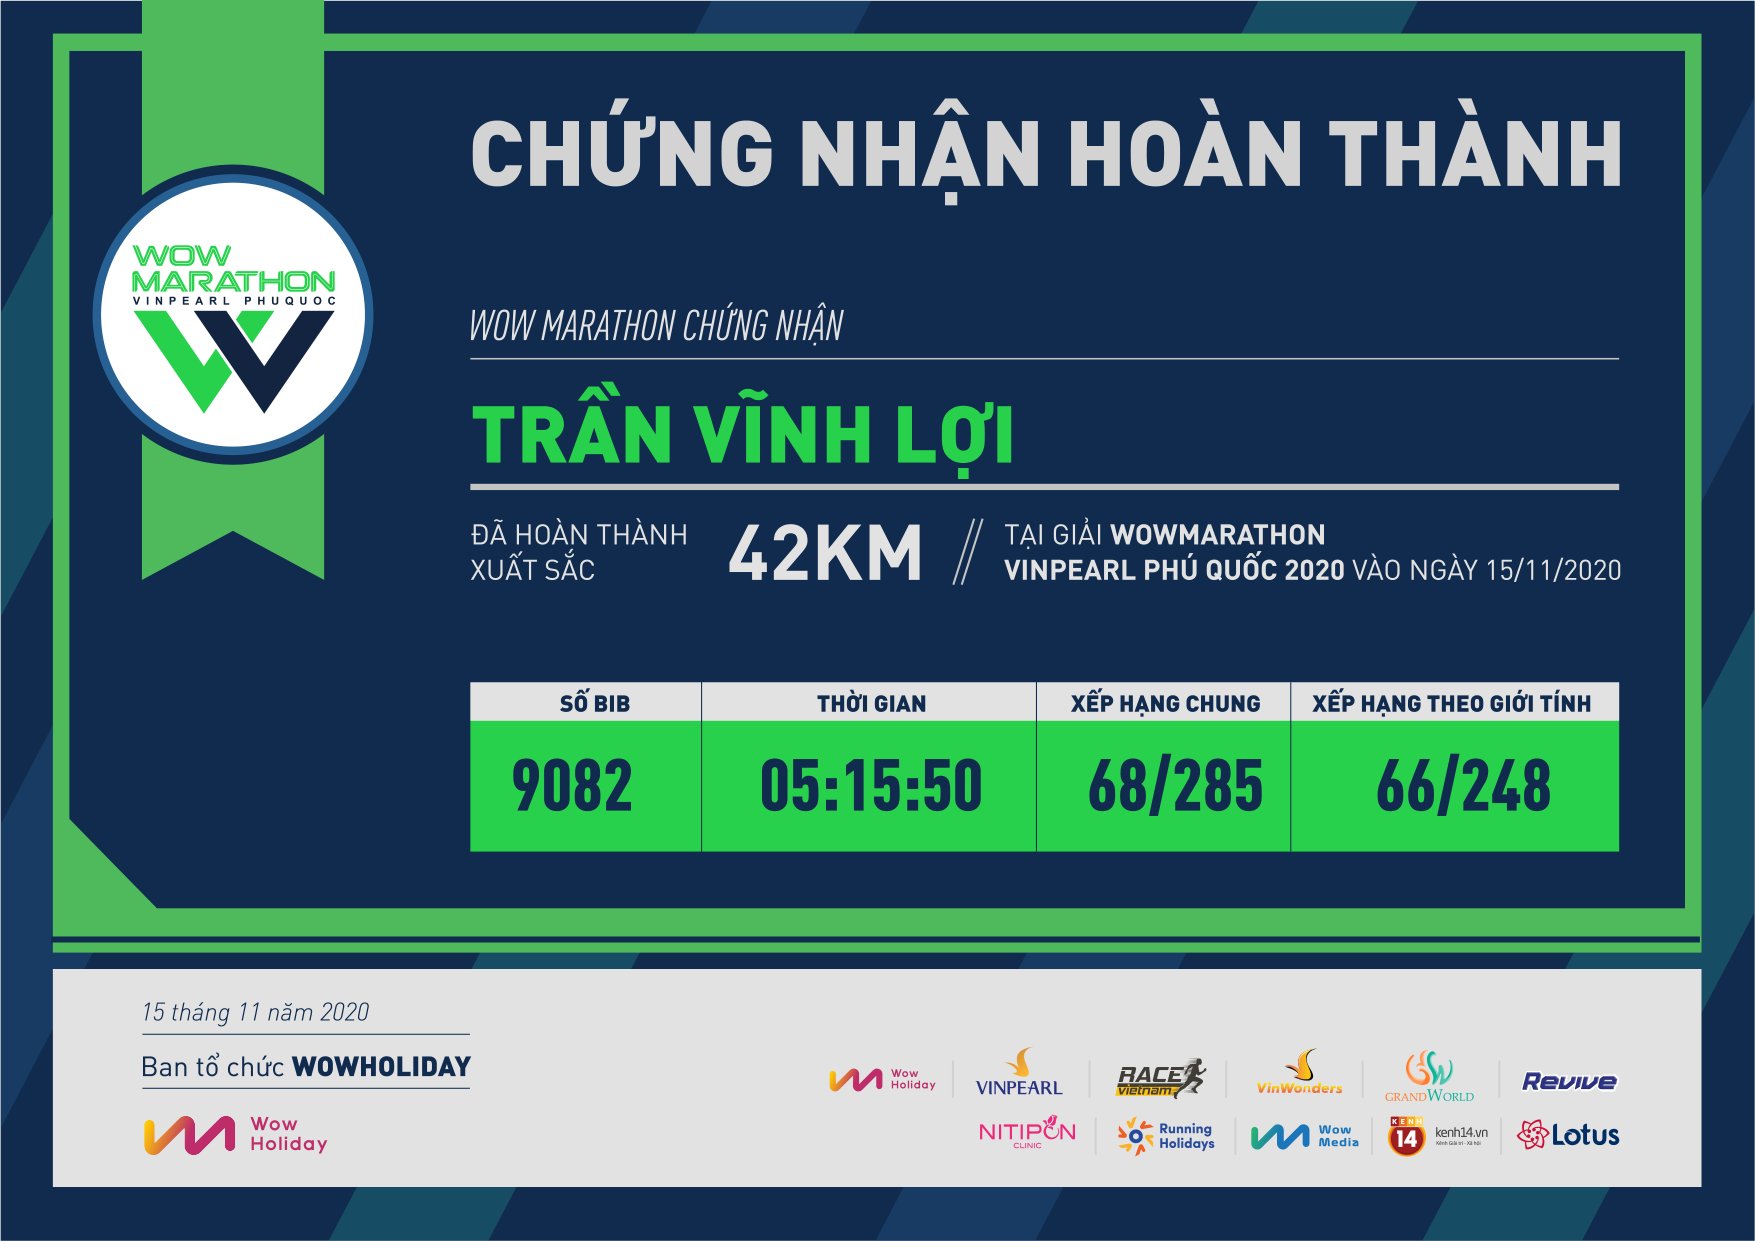 9082 - Trần Vĩnh Lợi